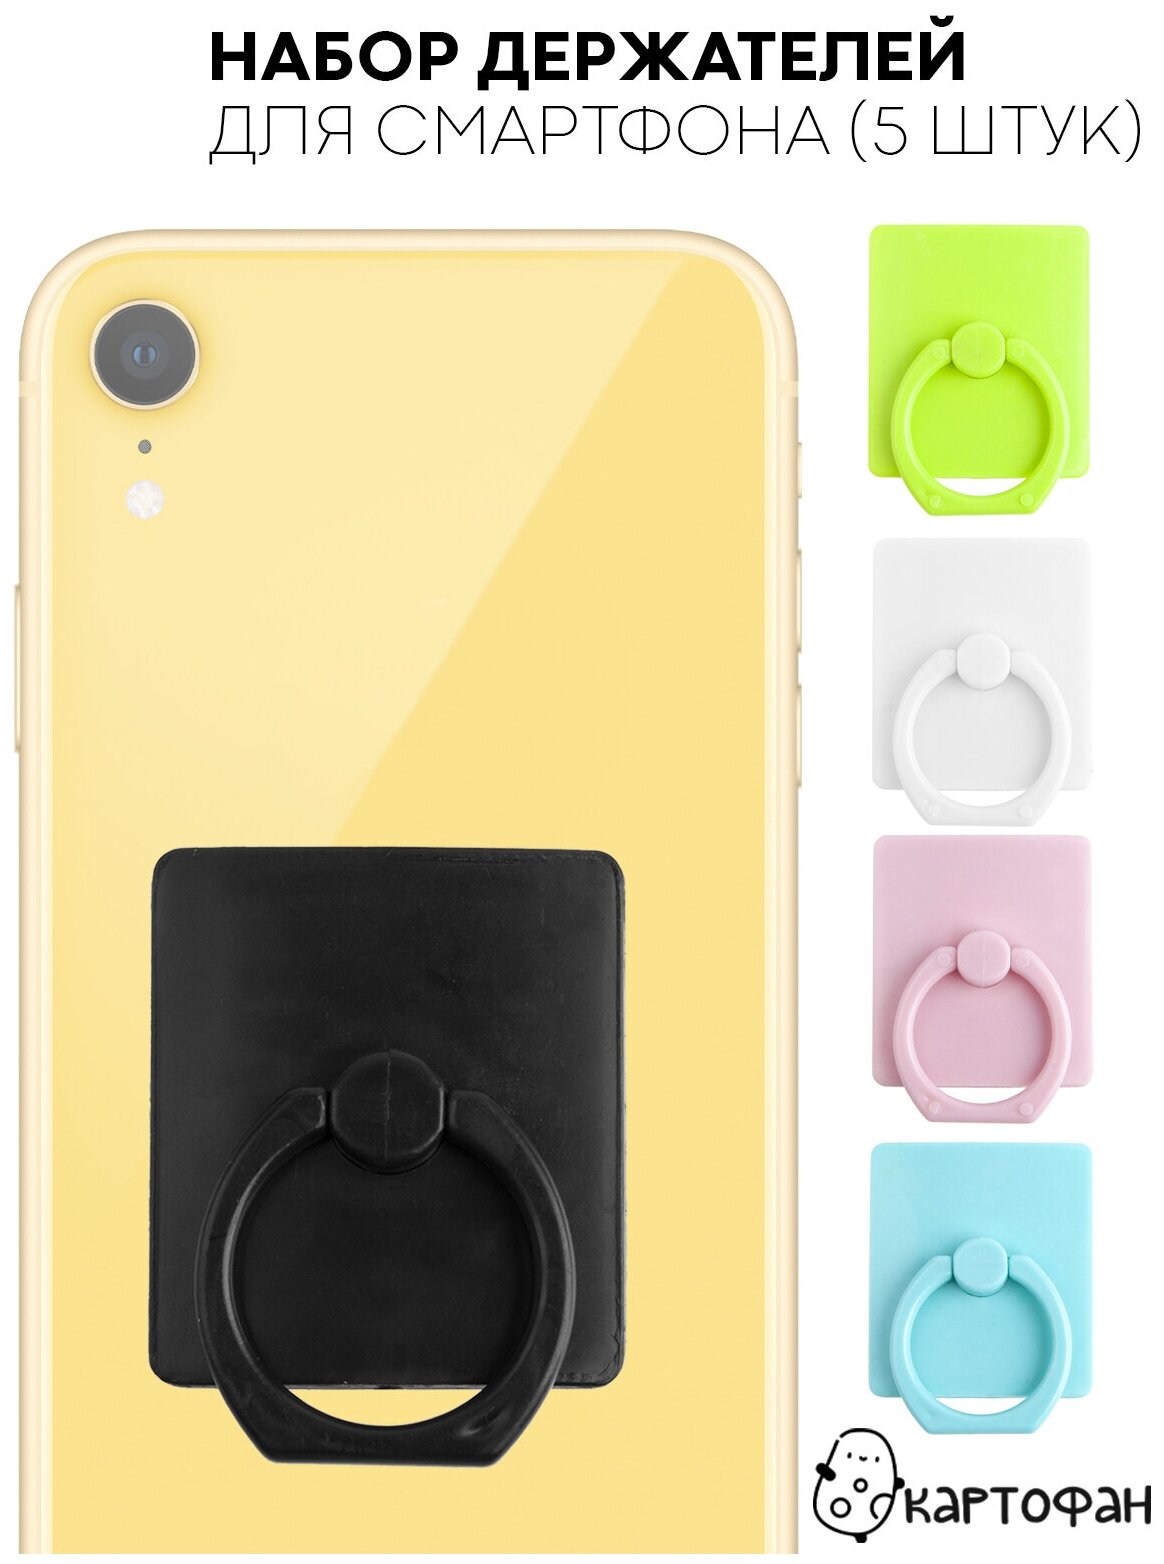 Пластиковый держатель для пальцев на телефон (попсокет на чехол для смартфона) набор 4 шт бренд картофан разноцветные